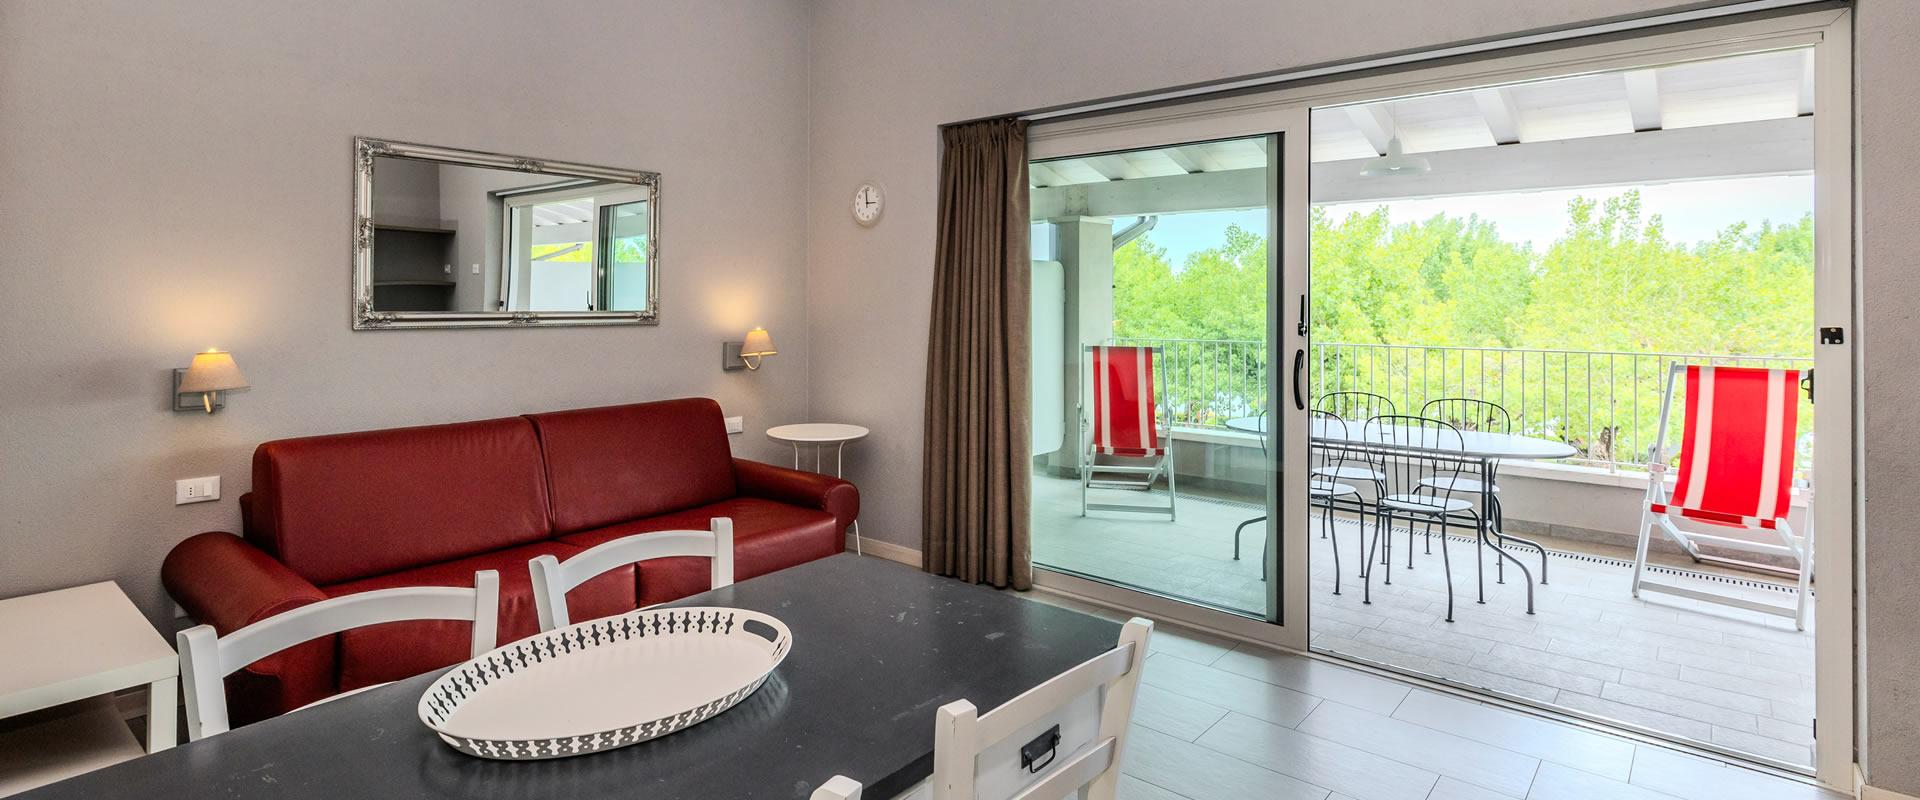 Soggiorno luminoso con divano rosso e balcone con vista verde.